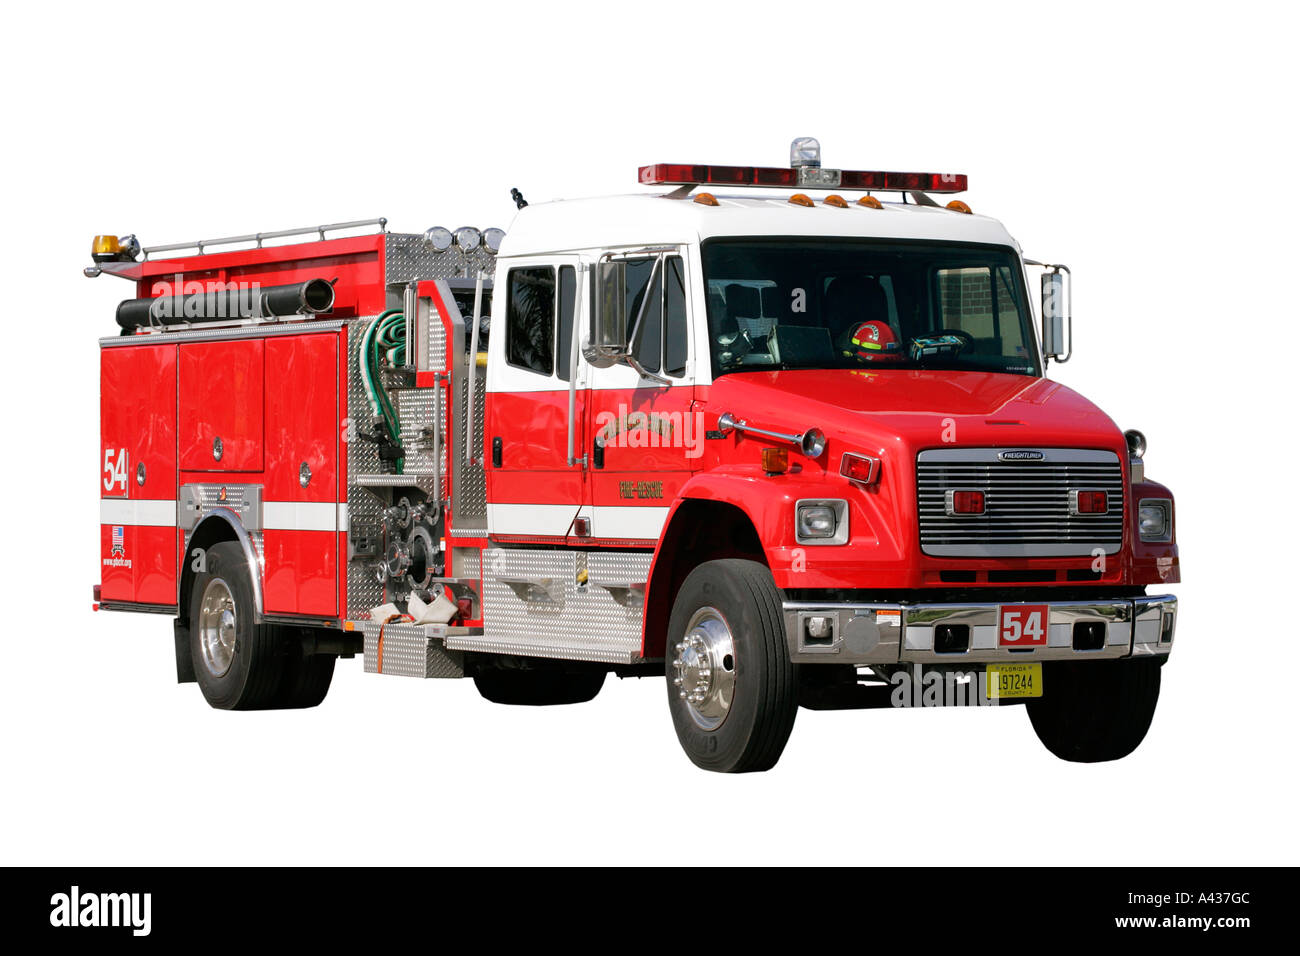 Voie d'incendie et de sauvetage d'urgence rouge firekeeper alarme vitesse danger brave destructeurs sauver la vie de l'échelle de l'eau brigade incendie Incendie de godet Banque D'Images